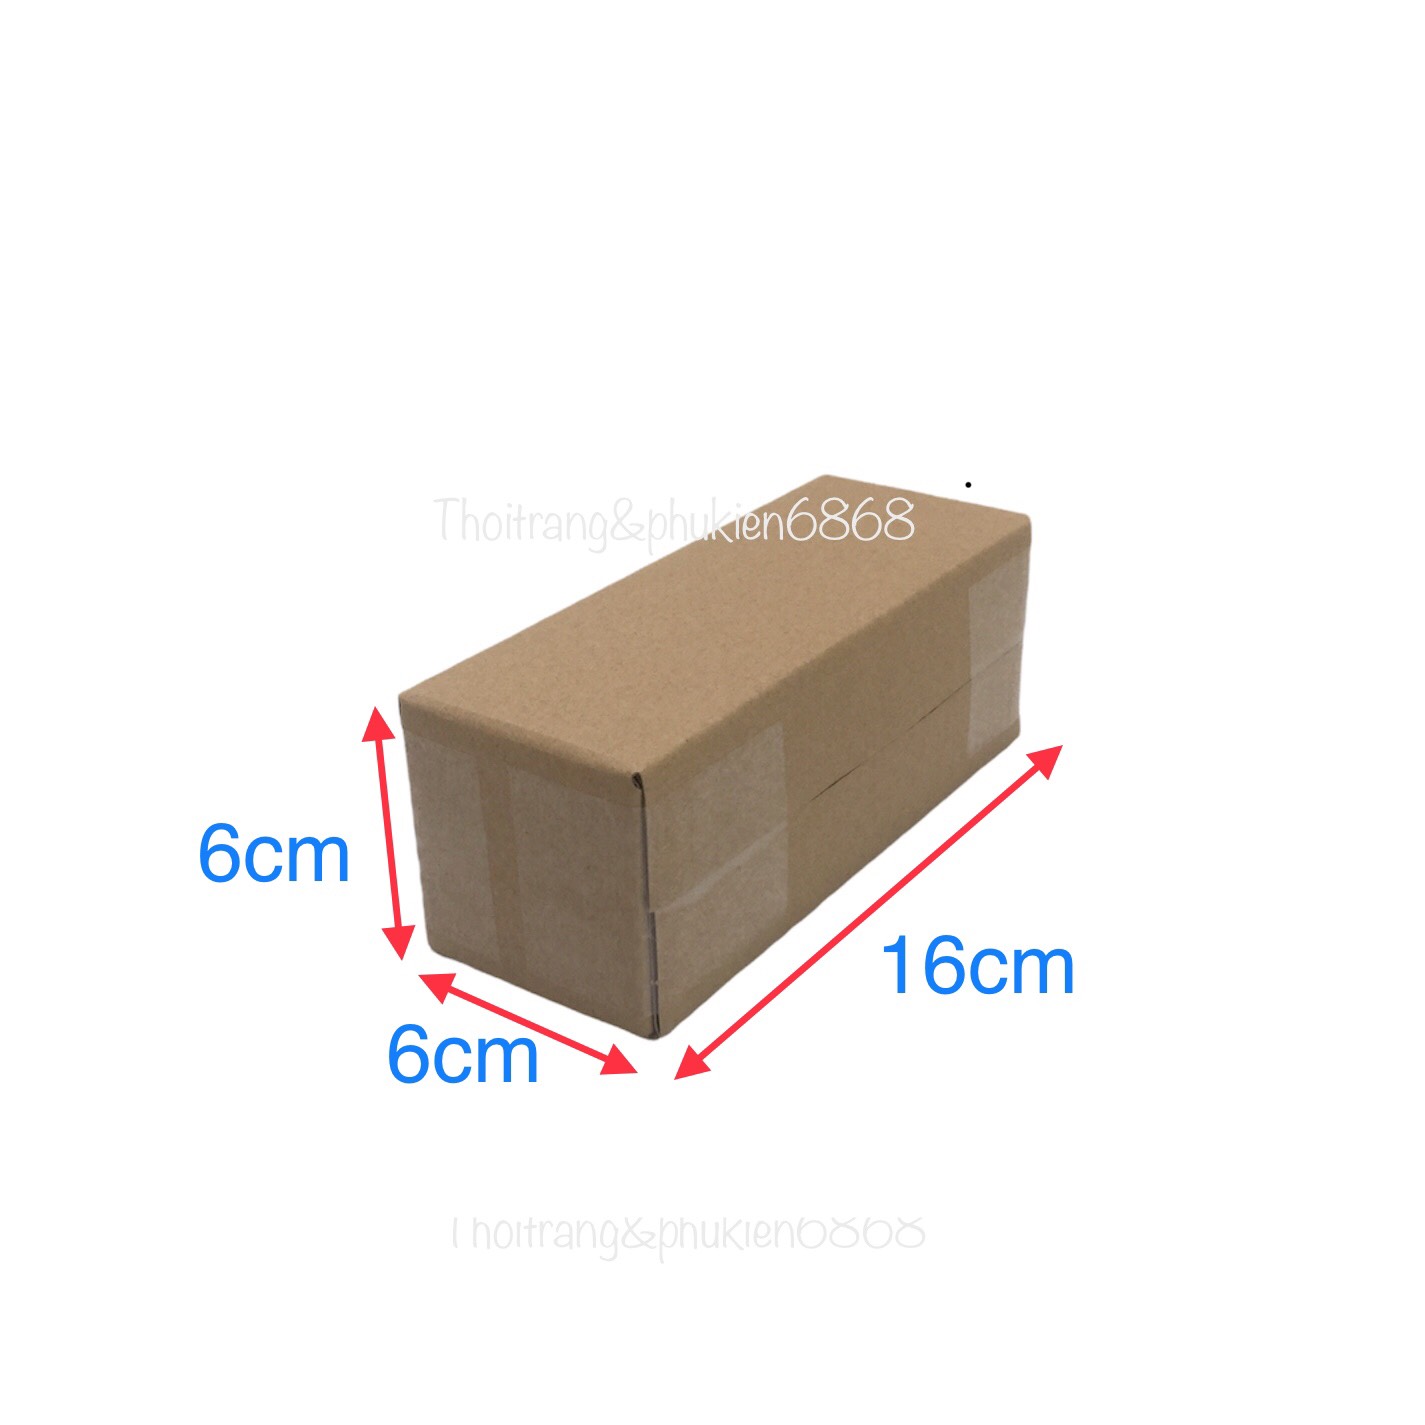 16x6x6 Combo10 hộp carton đóng hàng cỡ nhỏ size 16*6*6